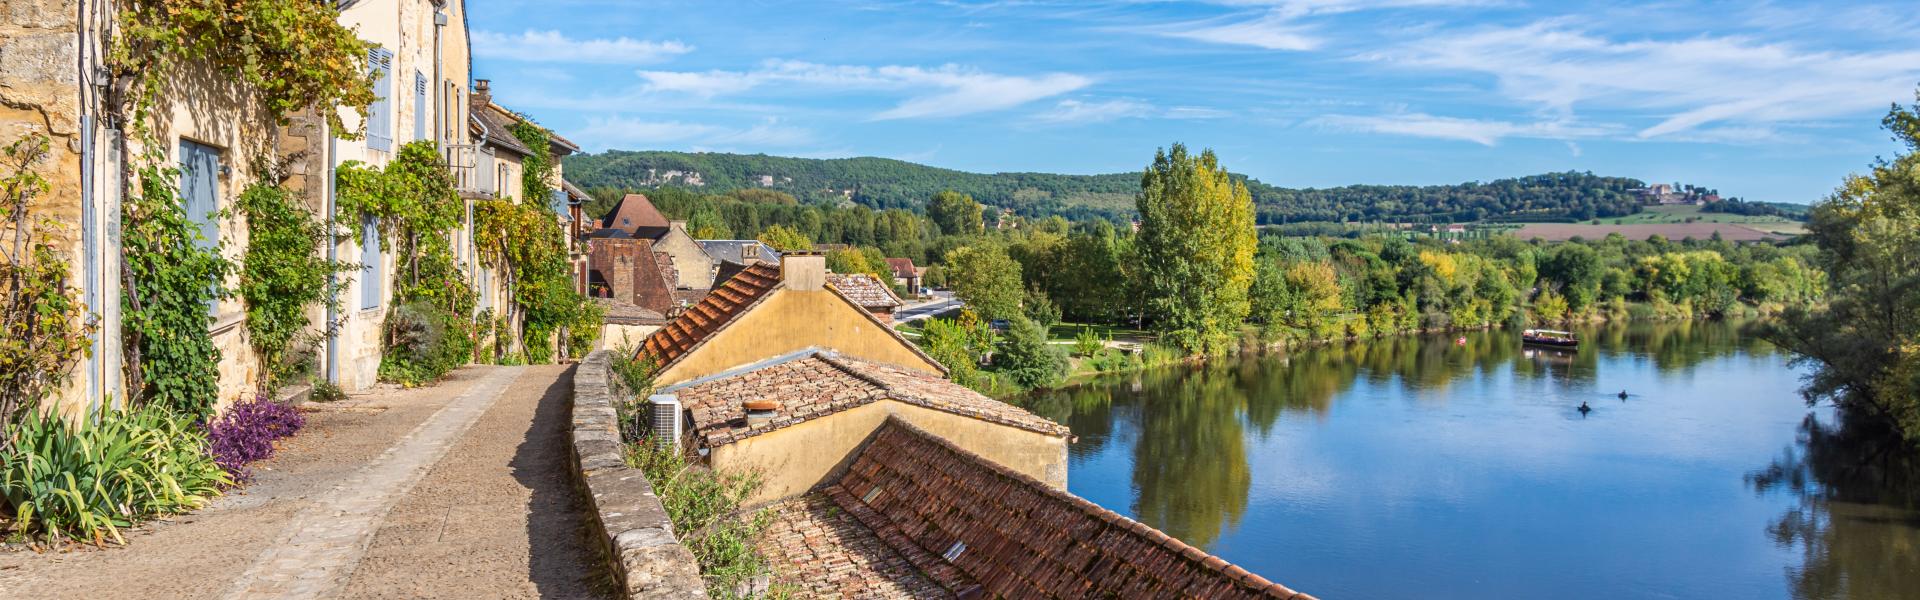 Vakantiehuizen in Dordogne: droomachtige vakantie - Casamundo